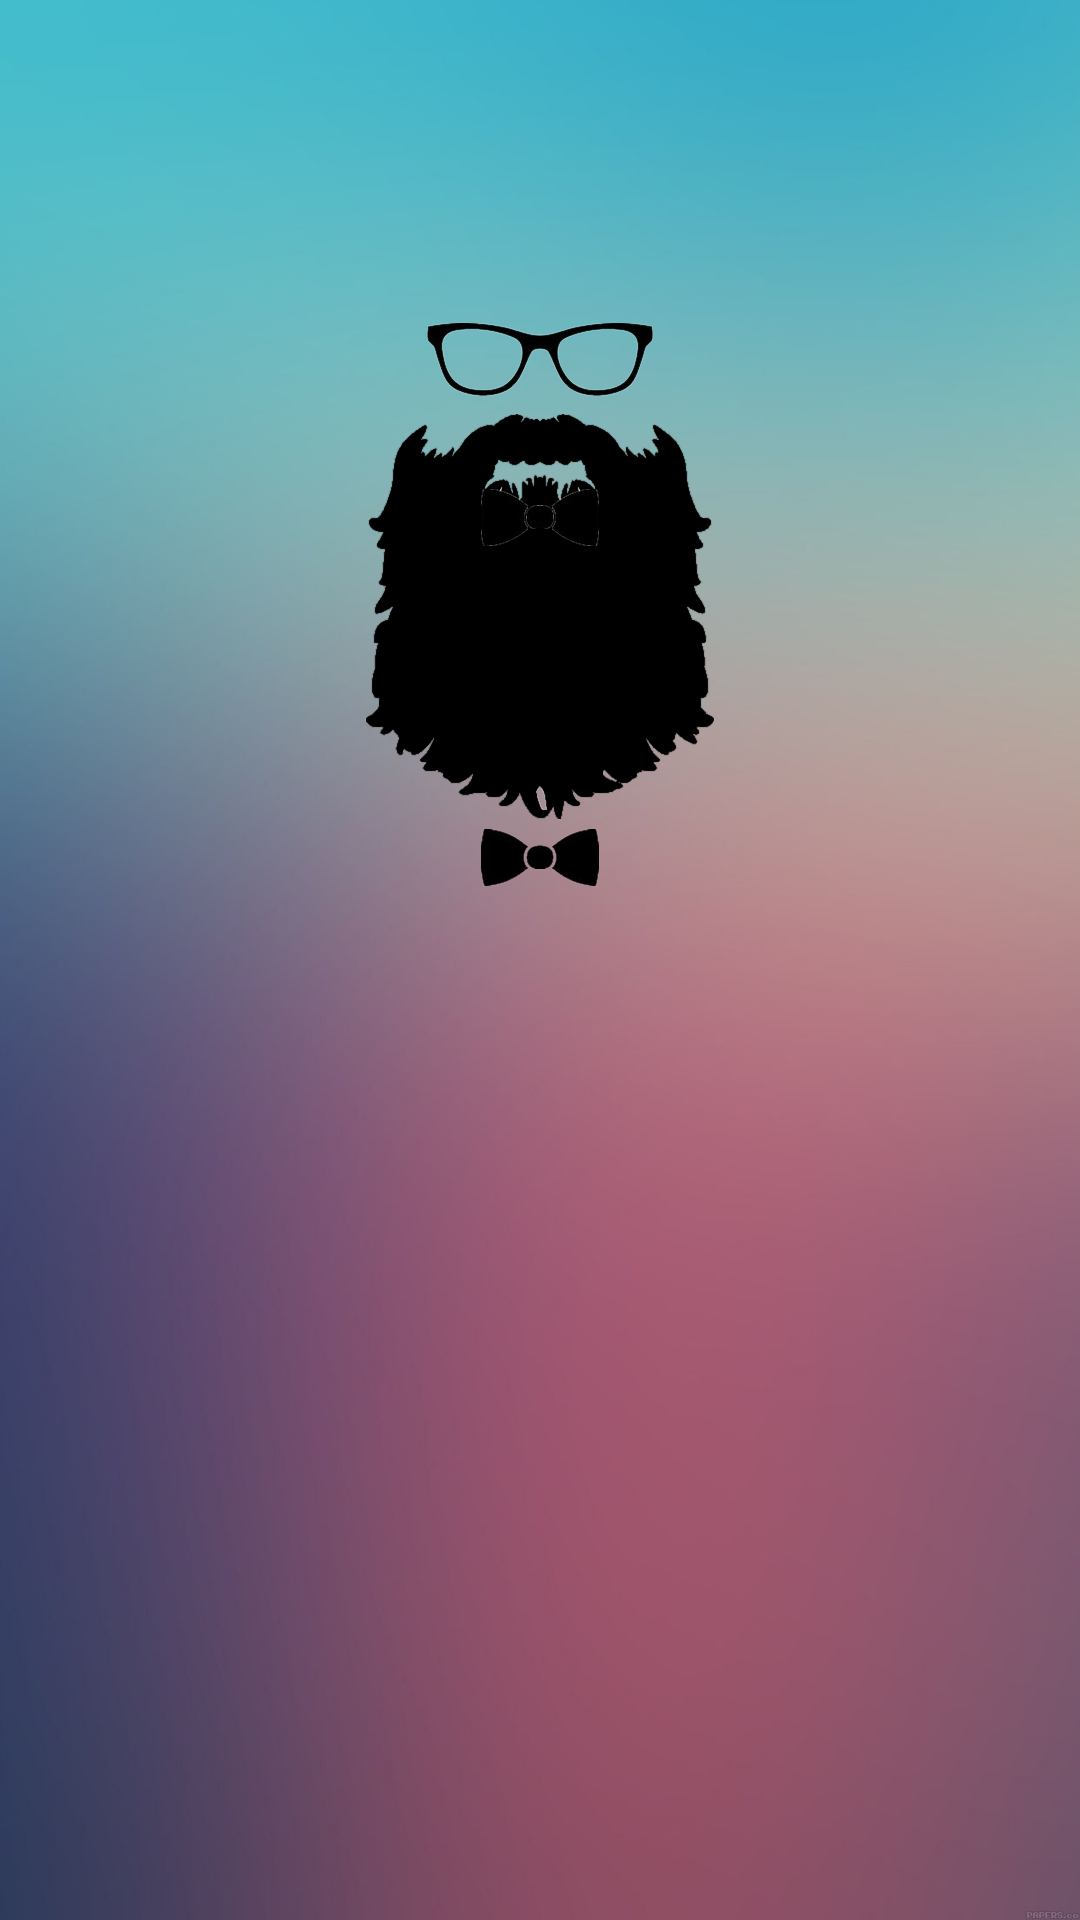 fond d'écran barbe pour iphone 6,cheveux,ciel,barbe,illustration,nuage